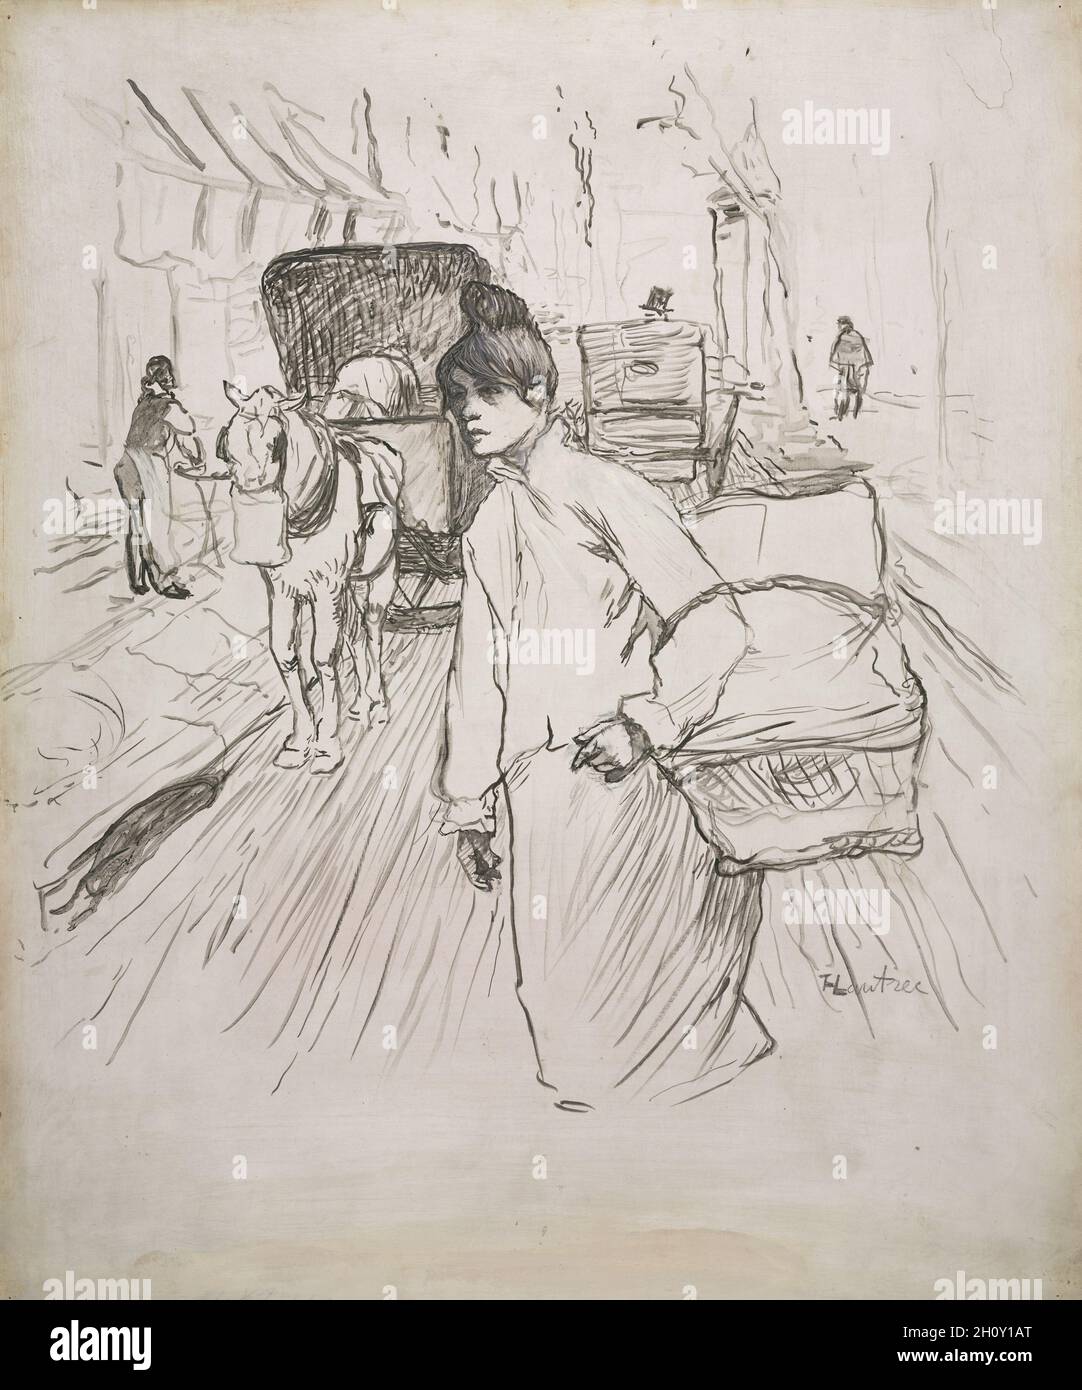 Curso de Dibujo Técnico en Toulouse Lautrec